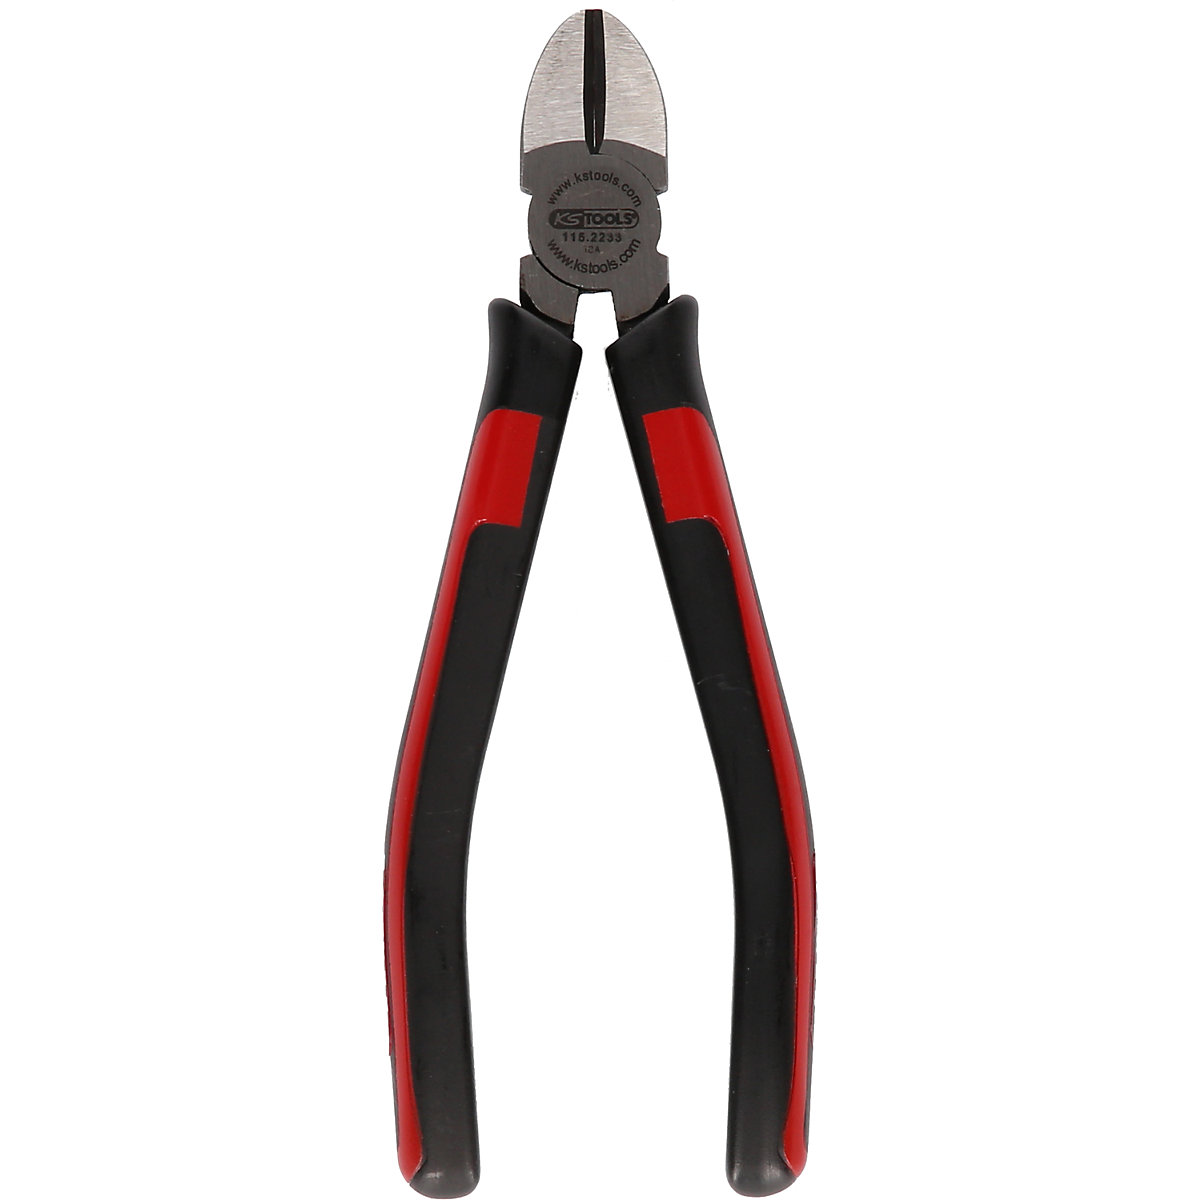 Pince coupante diagonale SlimPOWER – KS Tools: poignée 2